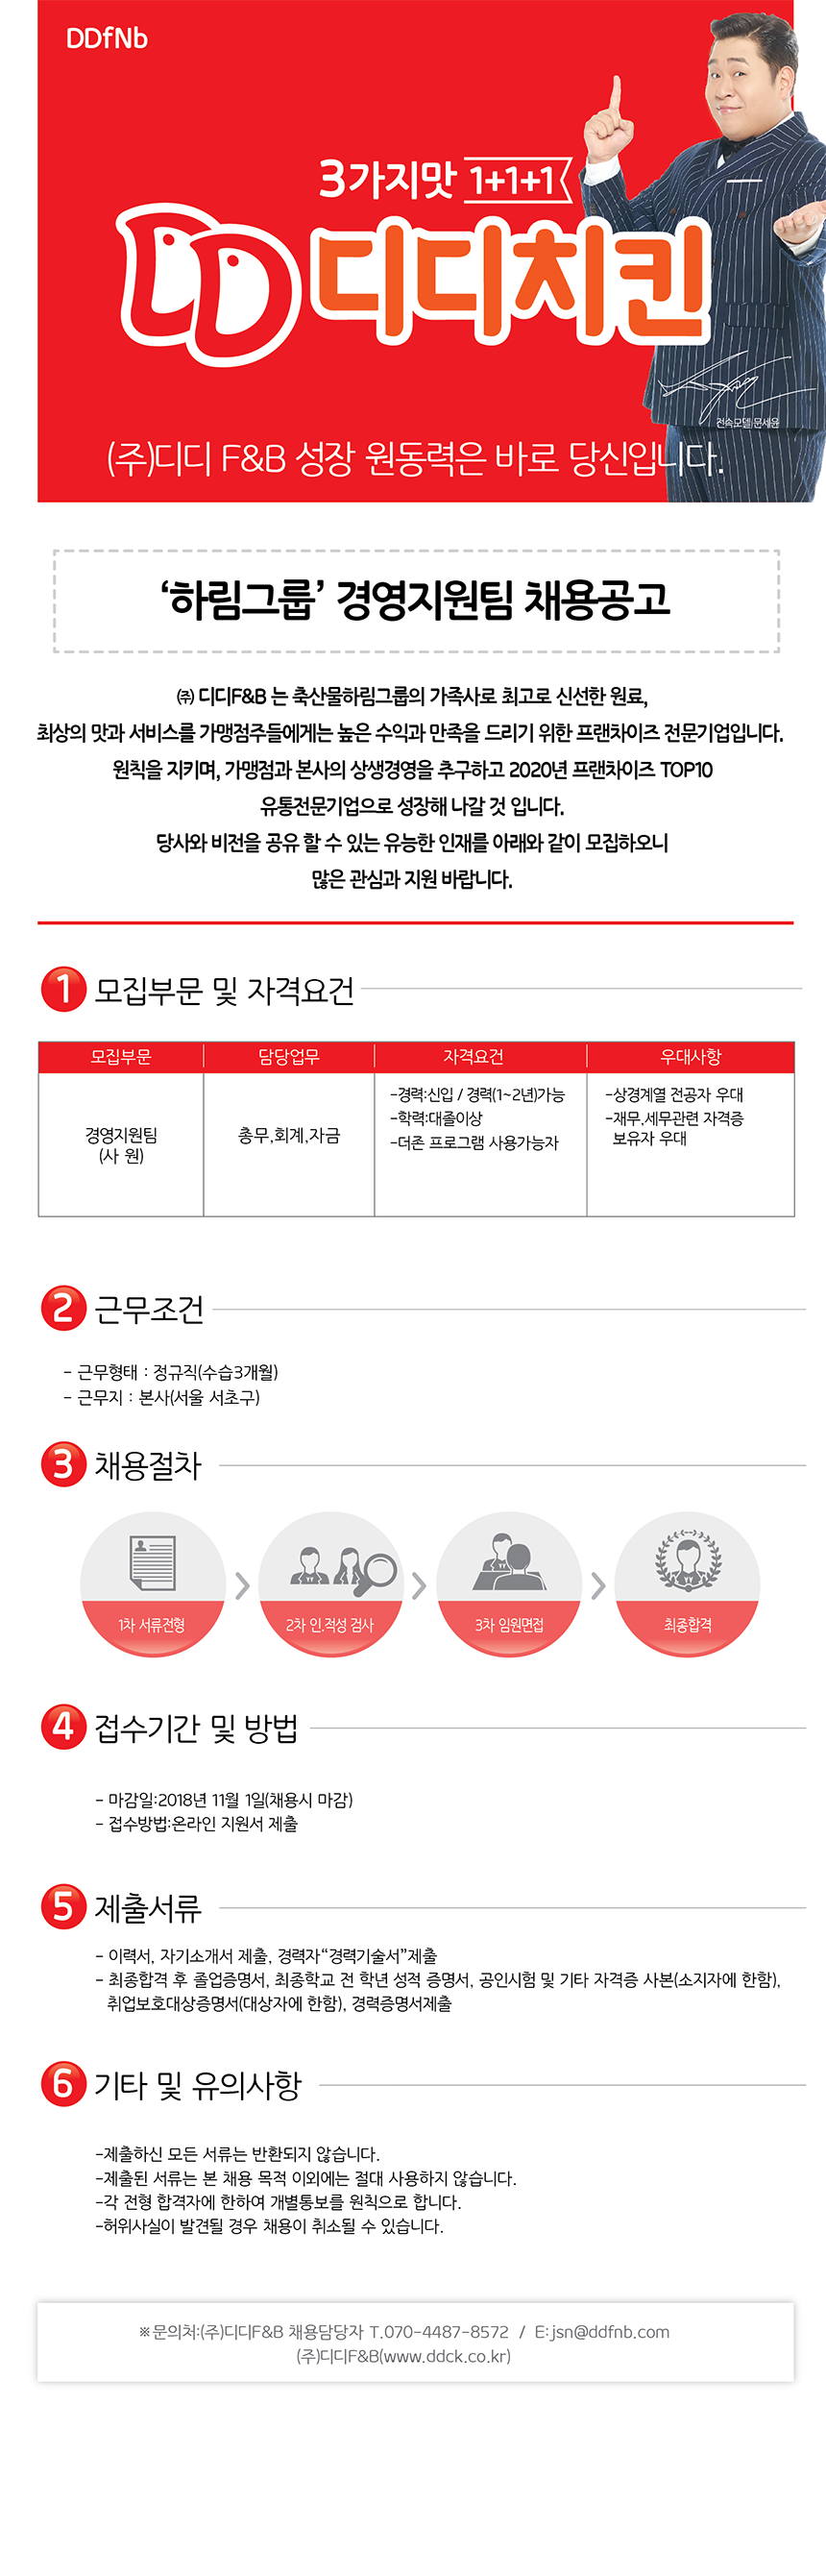 '하림그룹' (주)디디에프엔비 경영지원팀 채용 공고